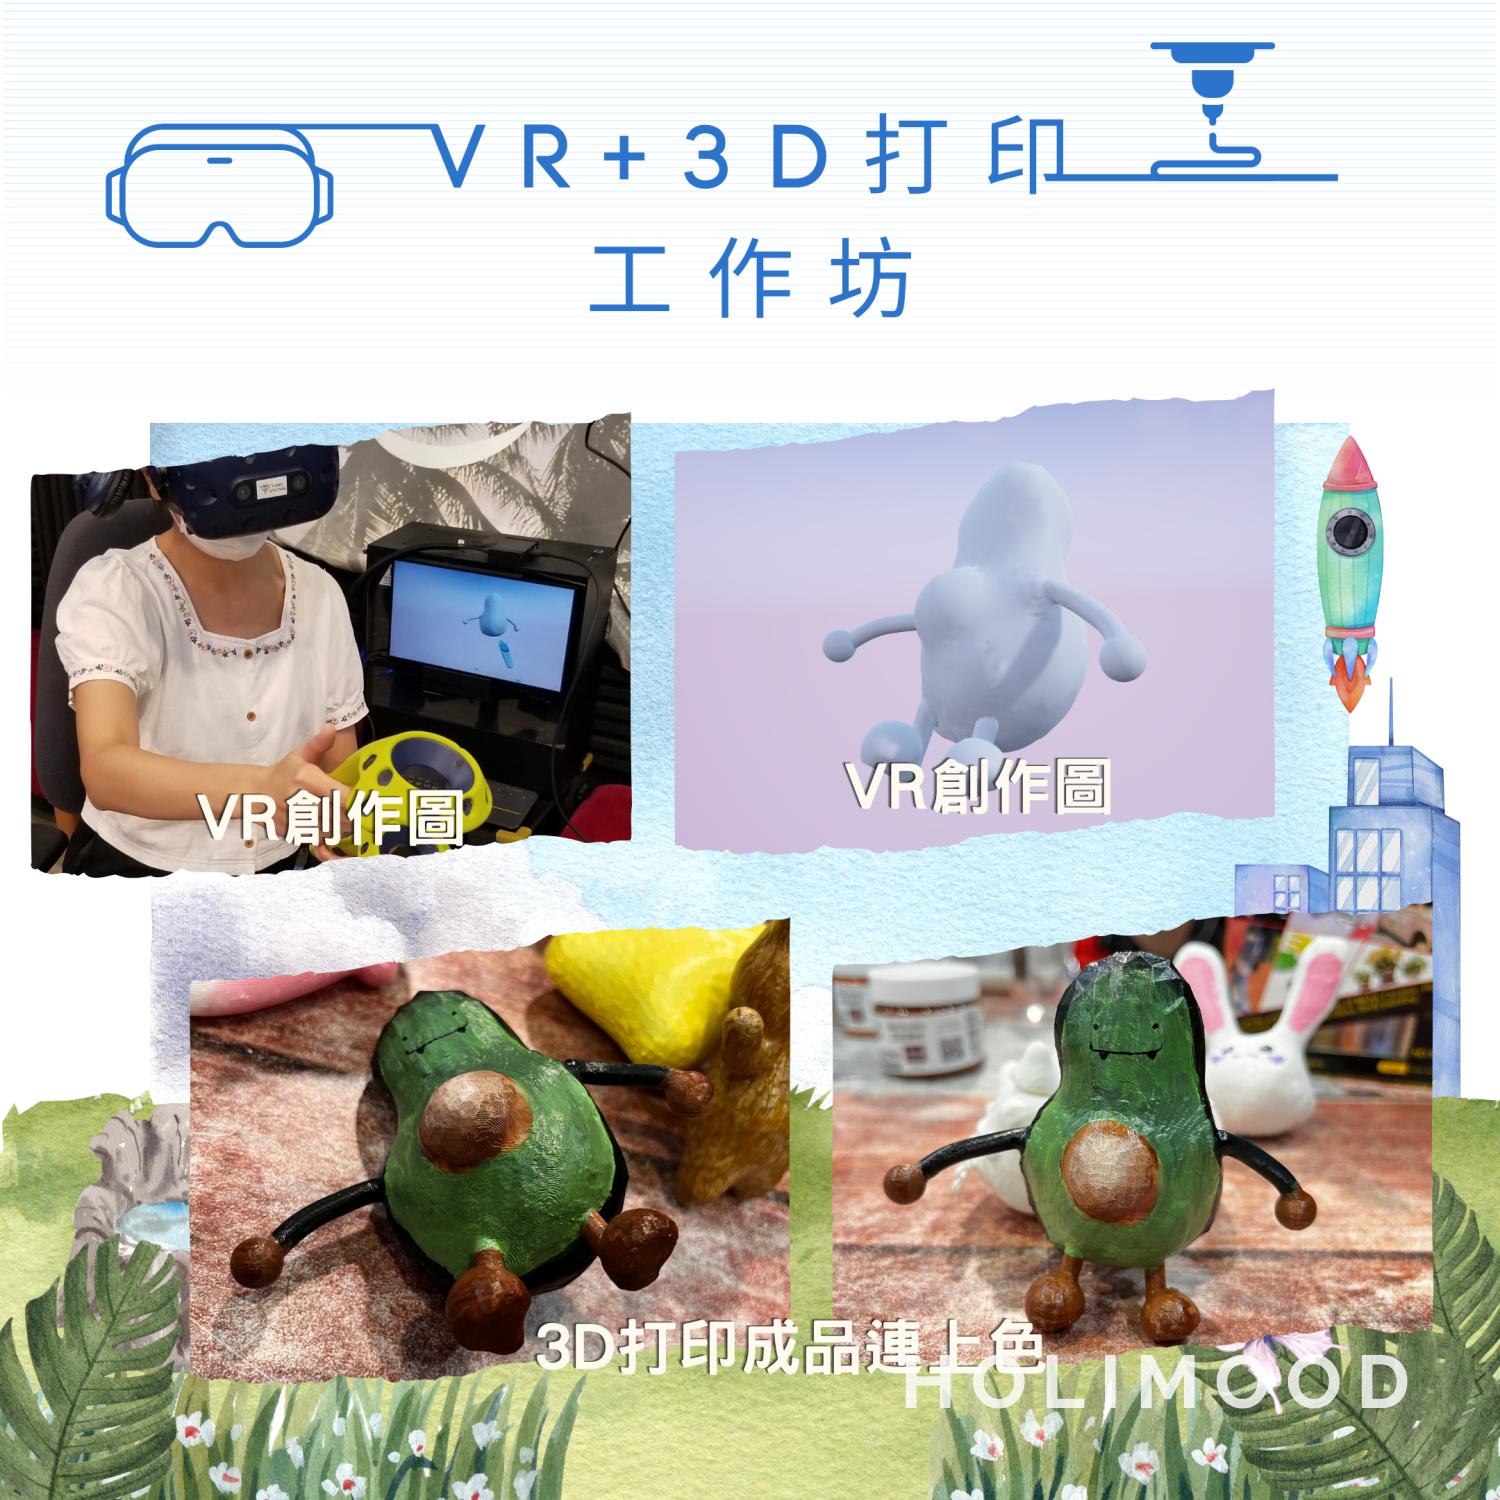 V-Owl Station VR Party VR+3D打印工作坊 6